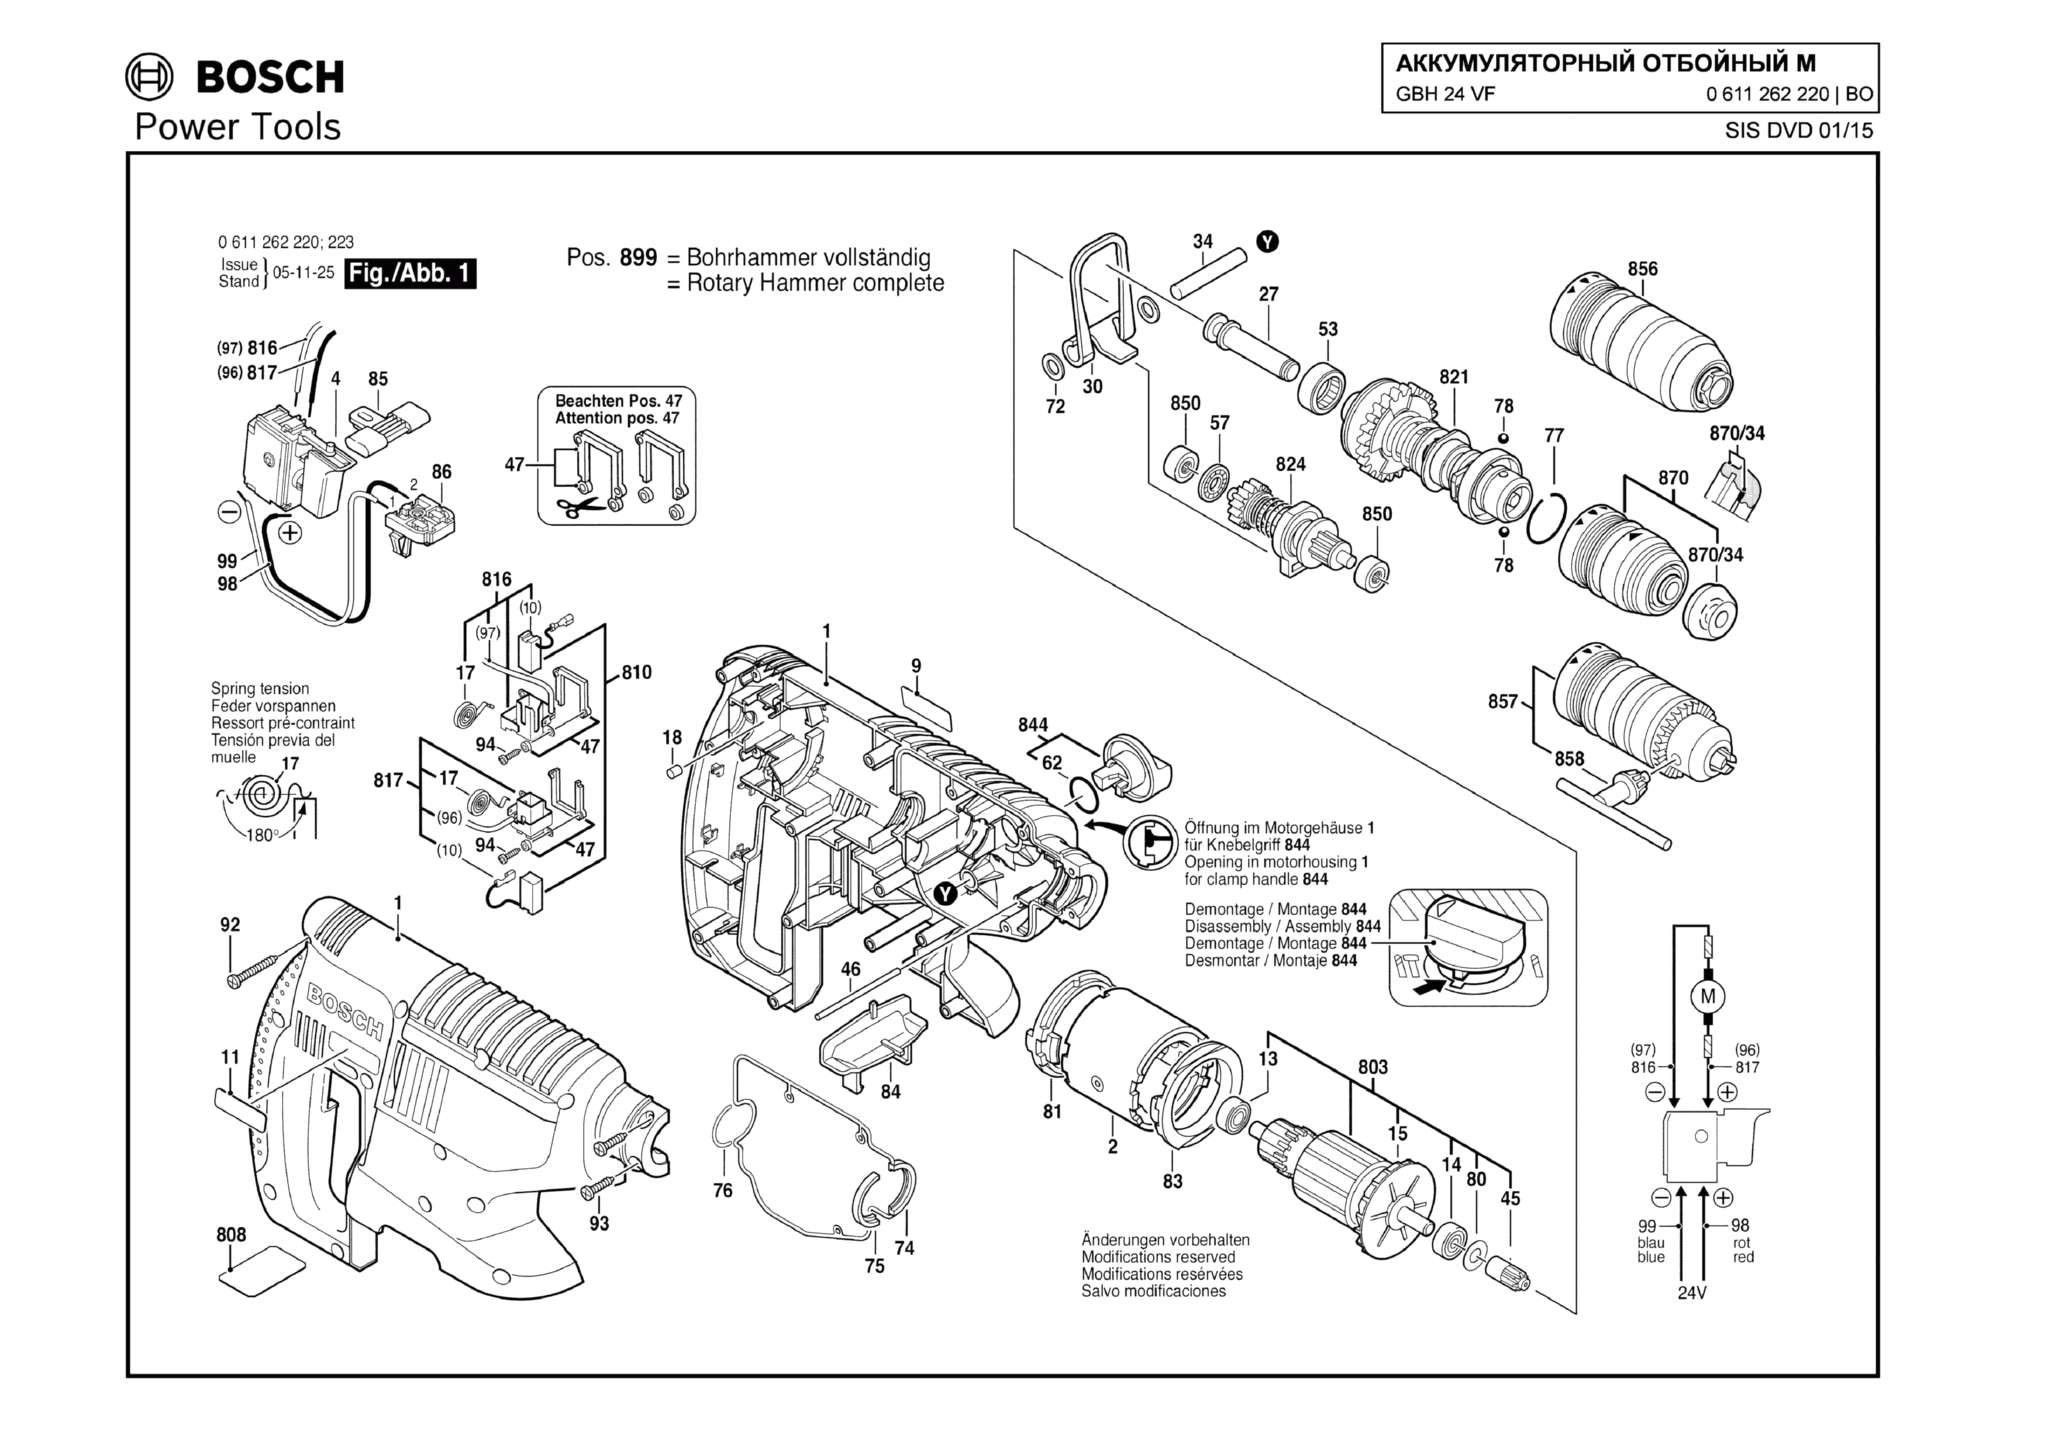 Запчасти, схема и деталировка Bosch GBH 24 VF (ТИП 0611262220) (ЧАСТЬ 1)